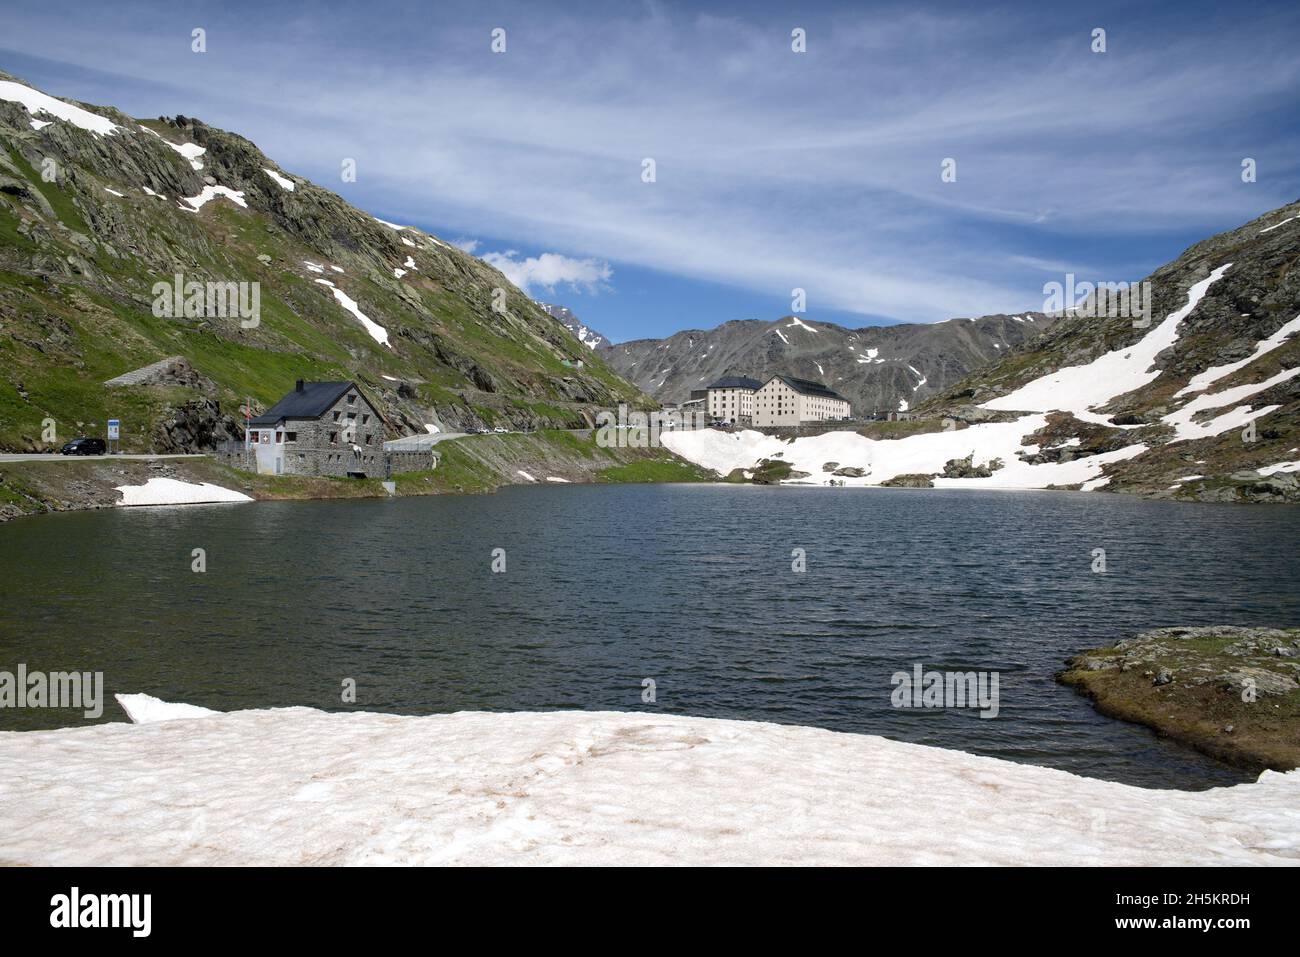 Lac et logement au col de San Bernardino, un col de haute montagne dans les Alpes suisses ; Suisse Banque D'Images